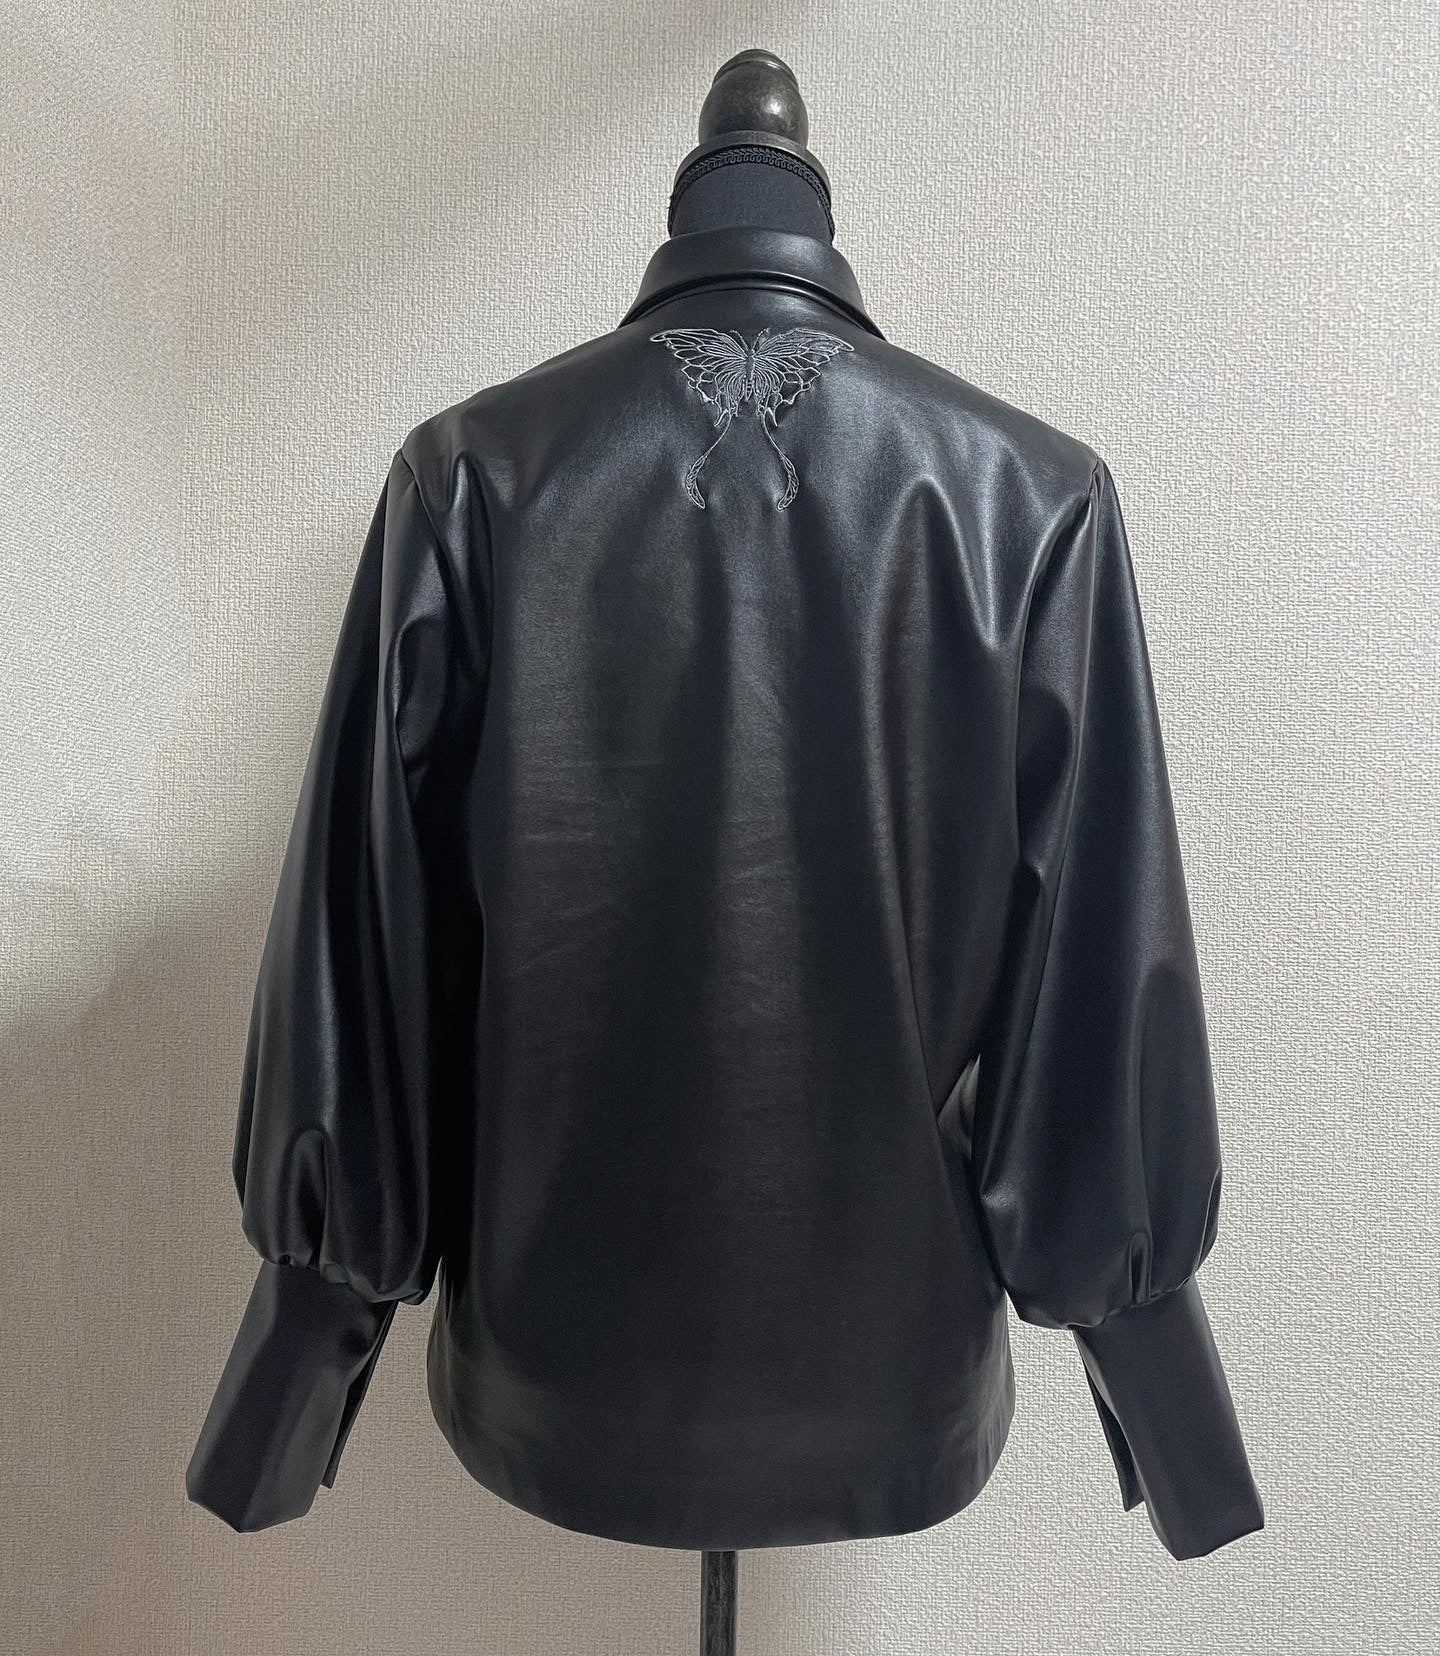 gibous fake leather jacket